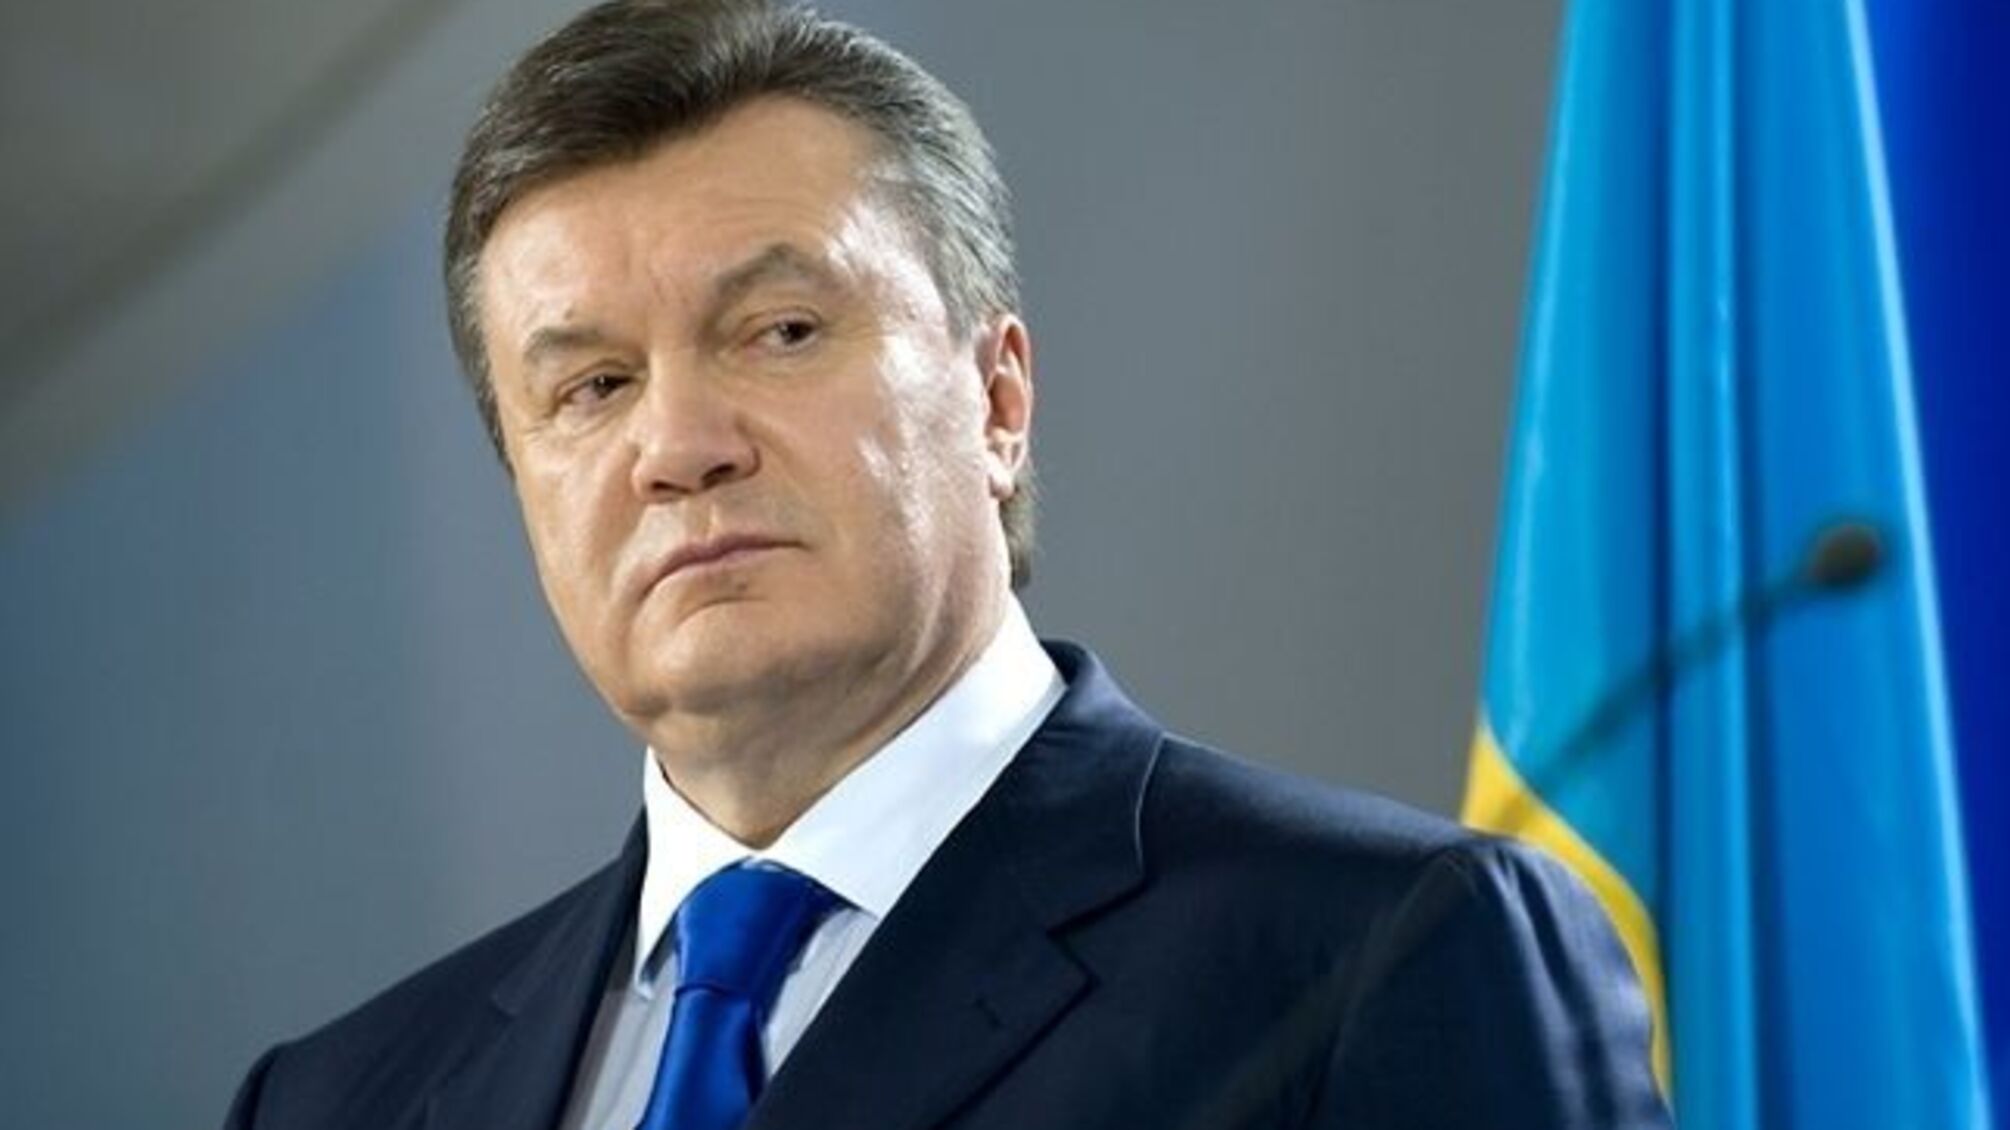 Янукович пообіцяв з'явитися сьогодні в суді — онлайн-трансляція засідання